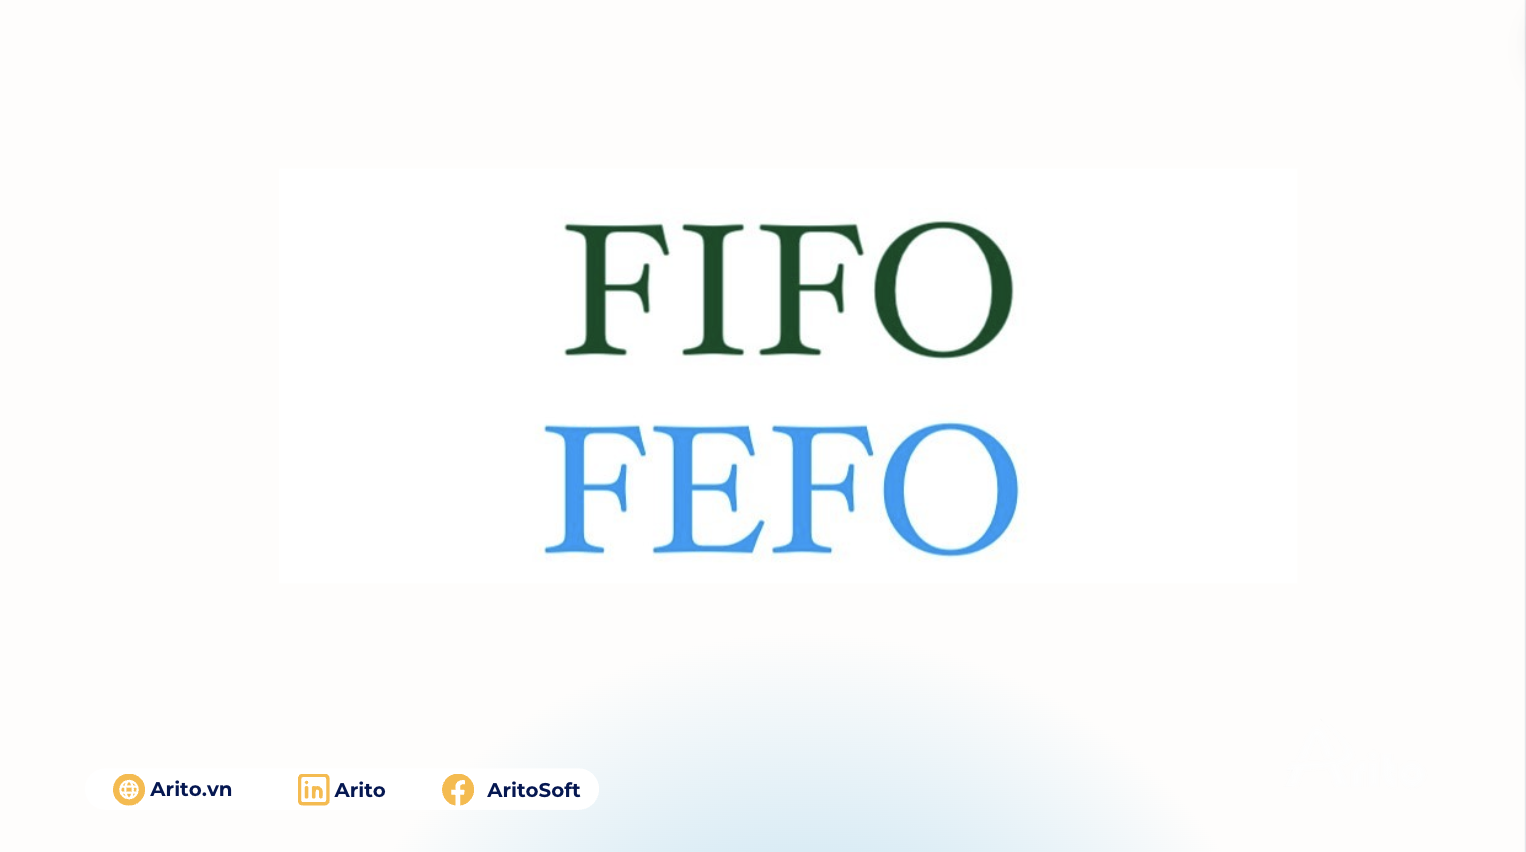 FIFO và FEFO là gì? Ưu và nhược điểm của 2 phương pháp này